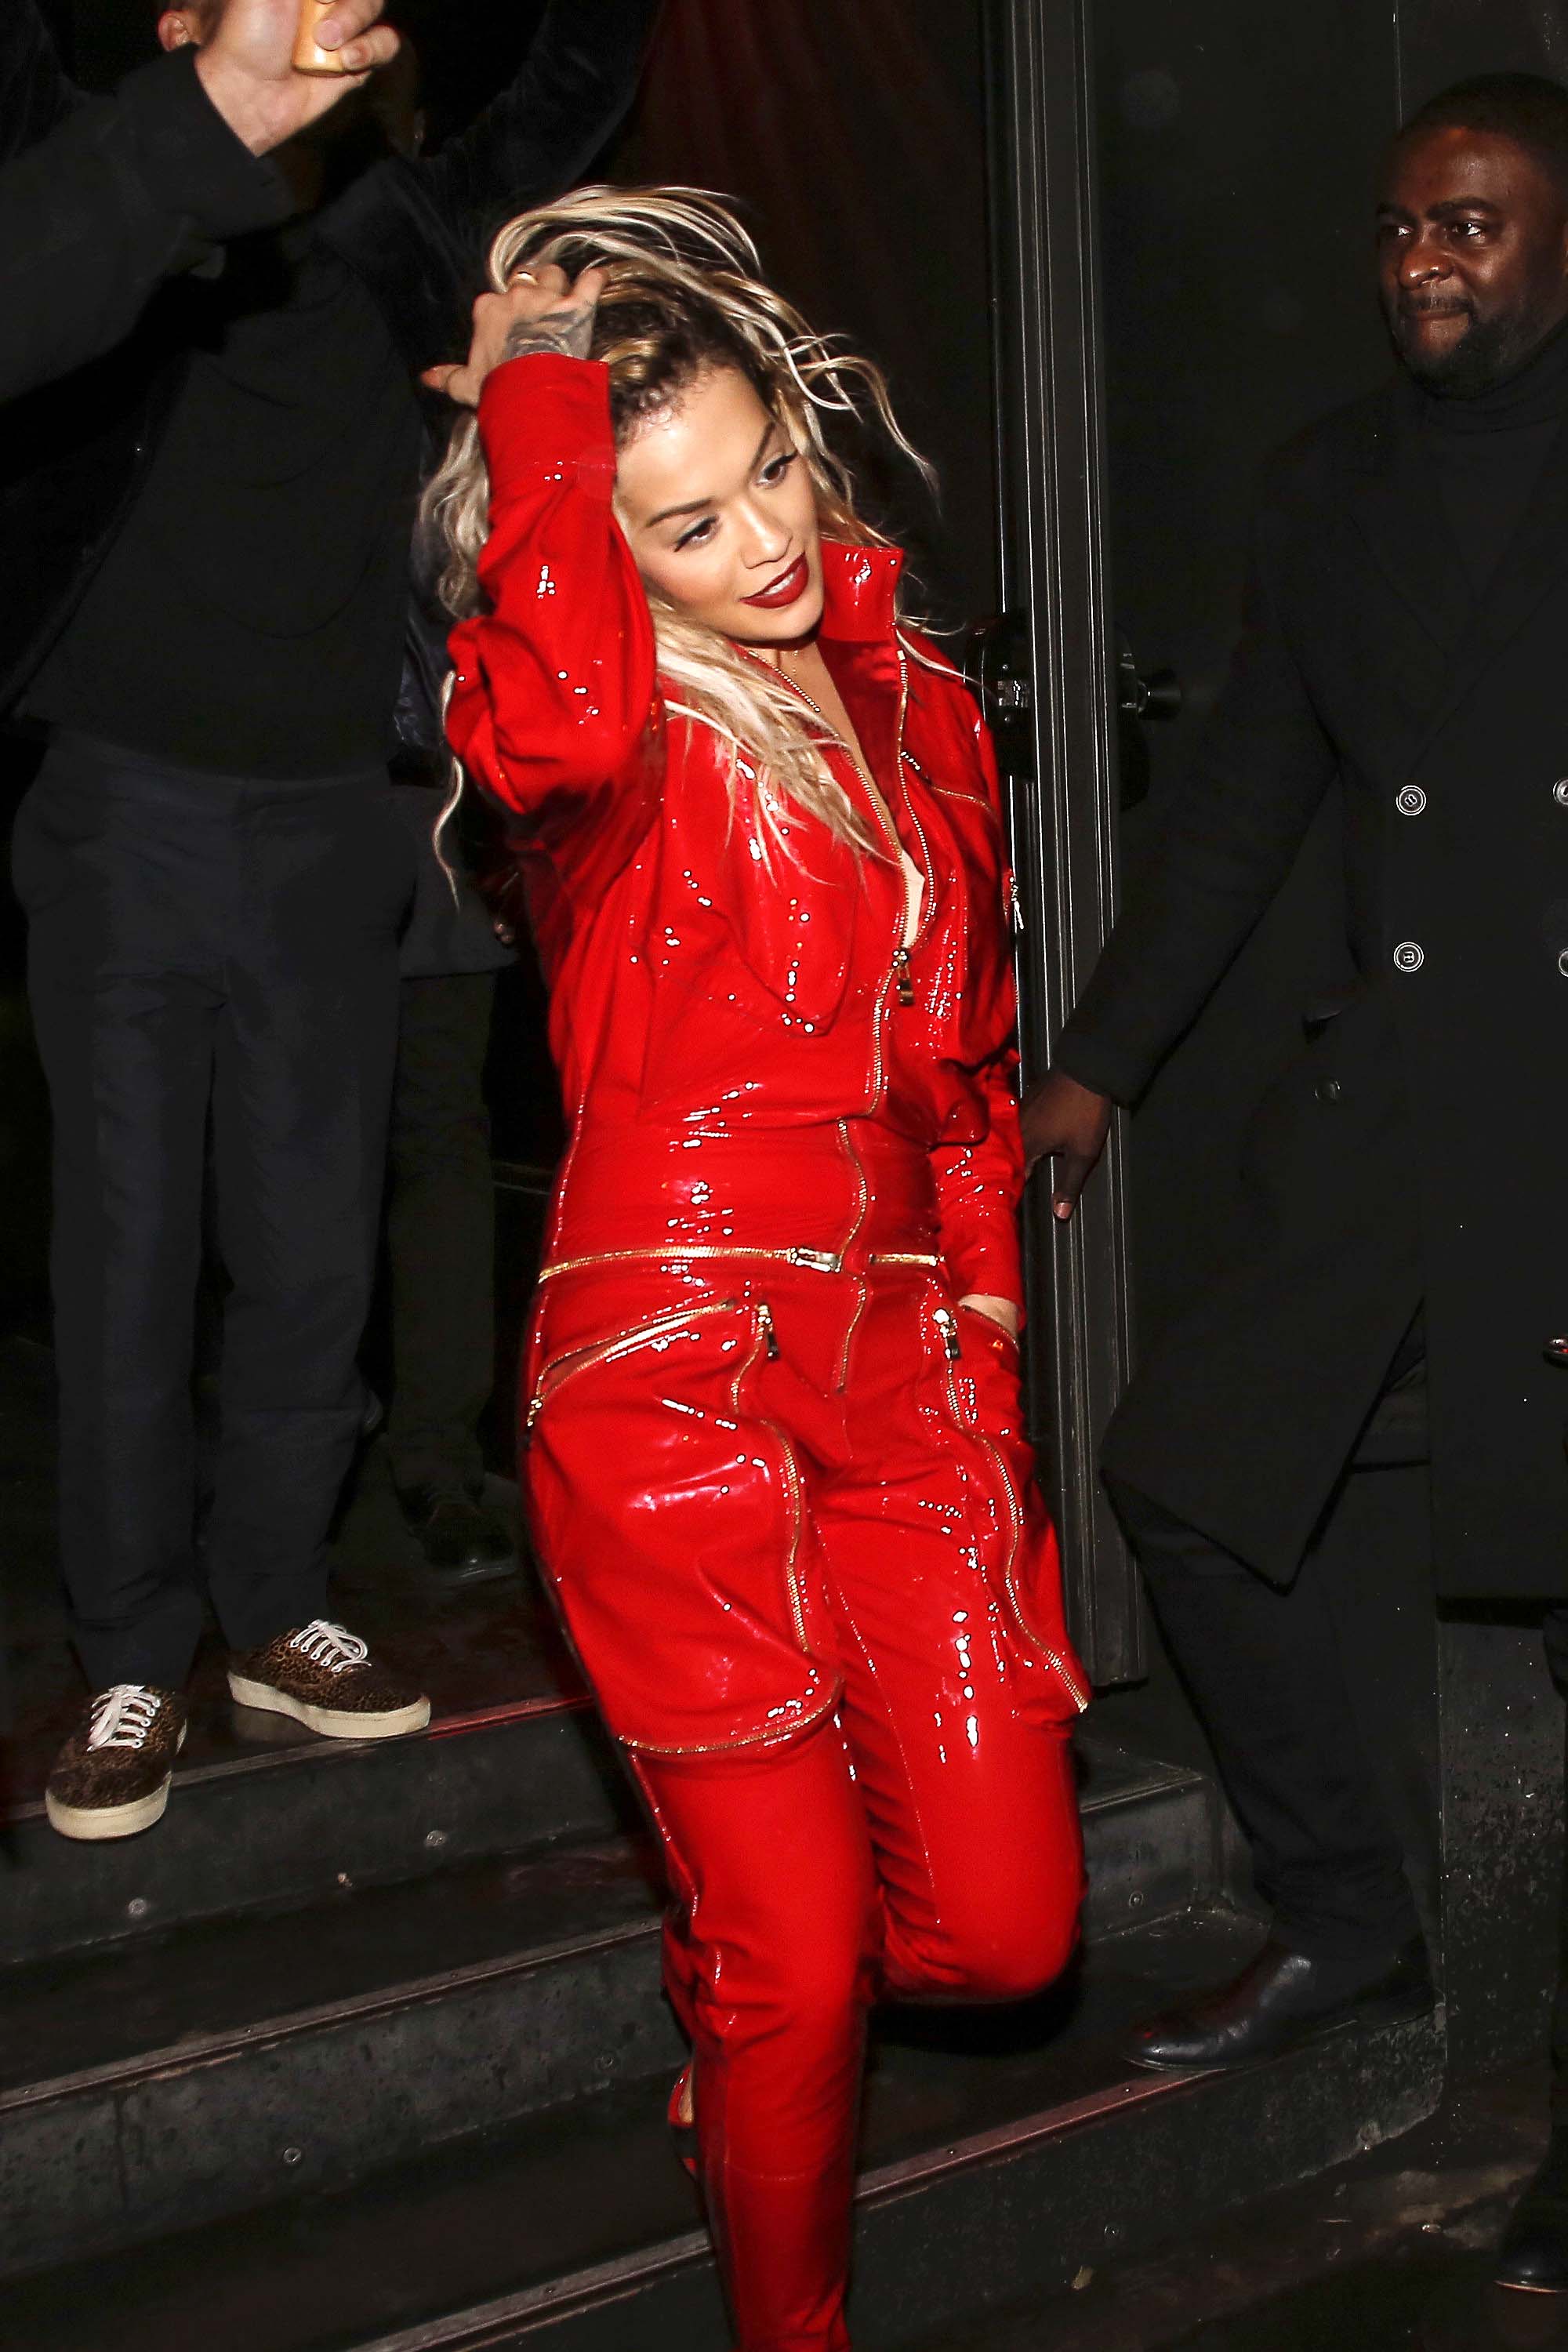 Rita Ora leaving an event in Paris